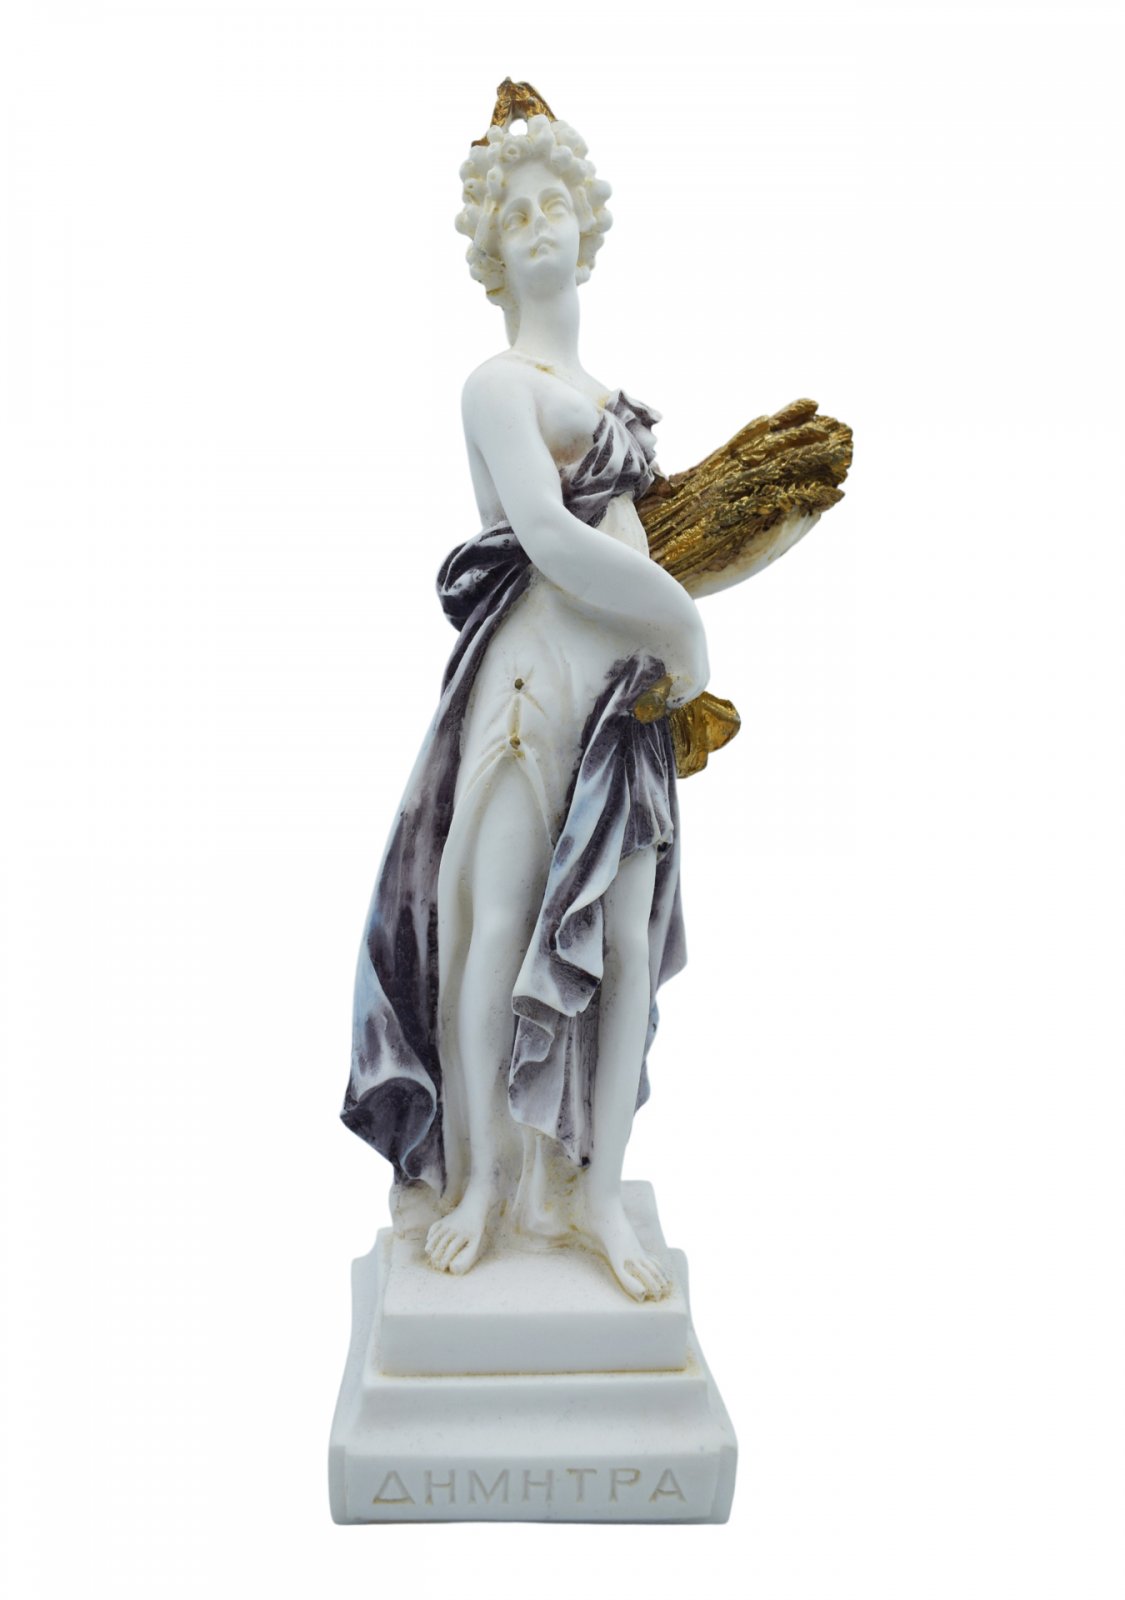 Demeter, Greek goddess of the harvest and agriculture, alabaster statue 